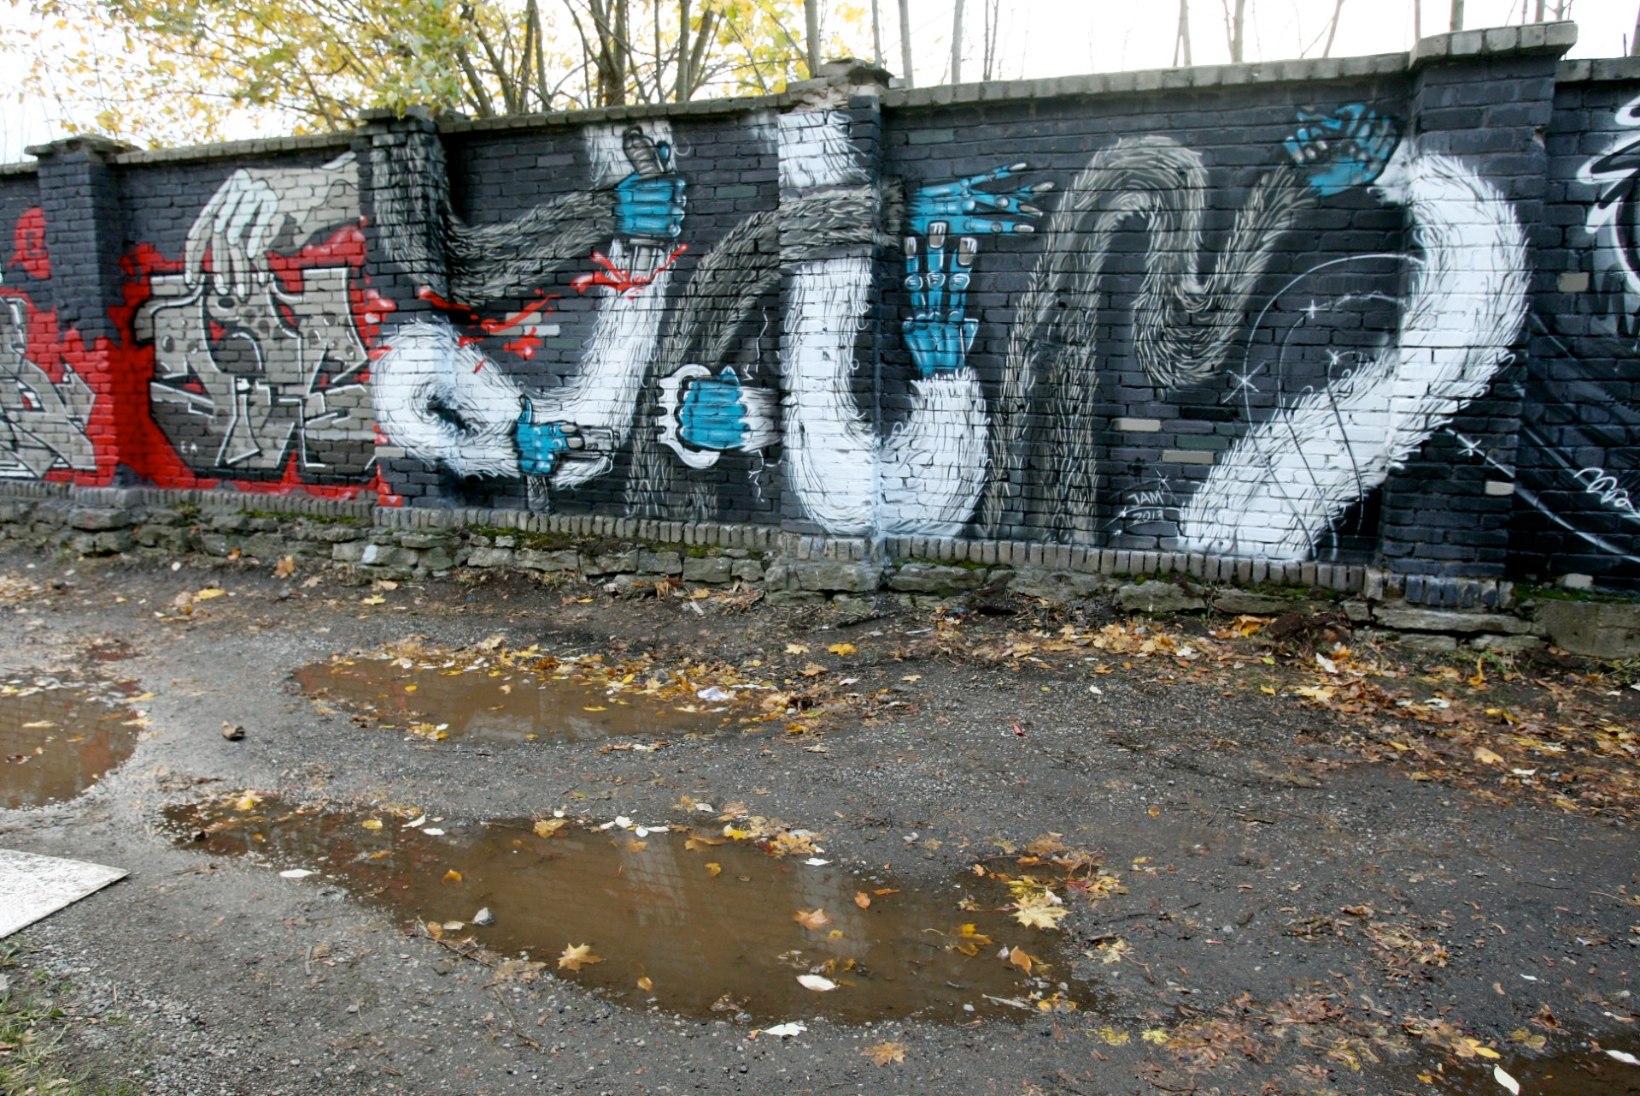 JJ-Street Baltic Sessioni parim grafiti valmis kokku 8–9 tunniga